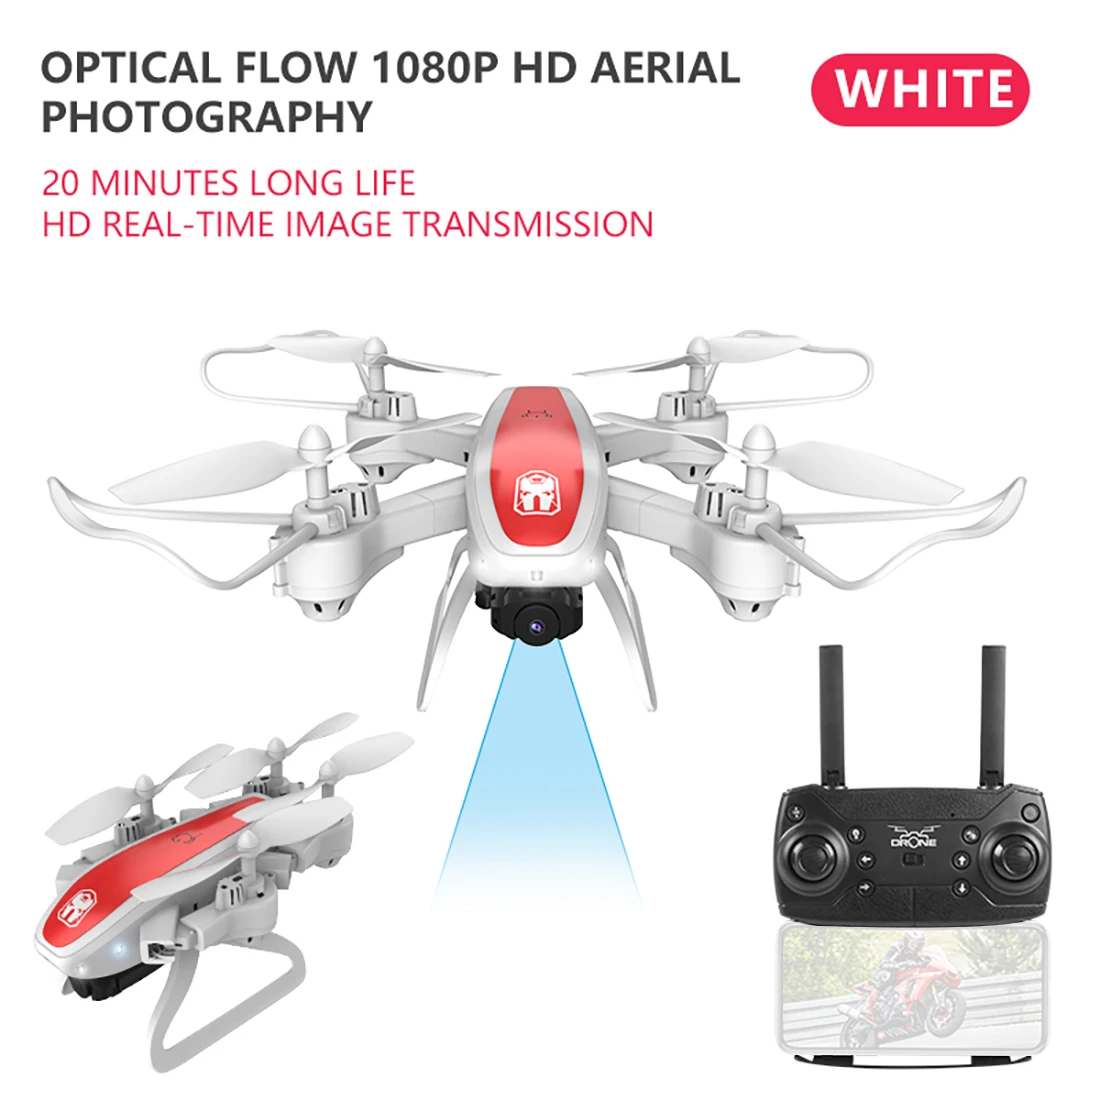 KY909 4K HD камера Дрон FPV Wi-Fi оптическое позиционирование потока RC Квадрокоптер самолет в сложенном виде Высота удерживает длительный срок службы батареи детские игрушки - Цвет: 1080P Camera White